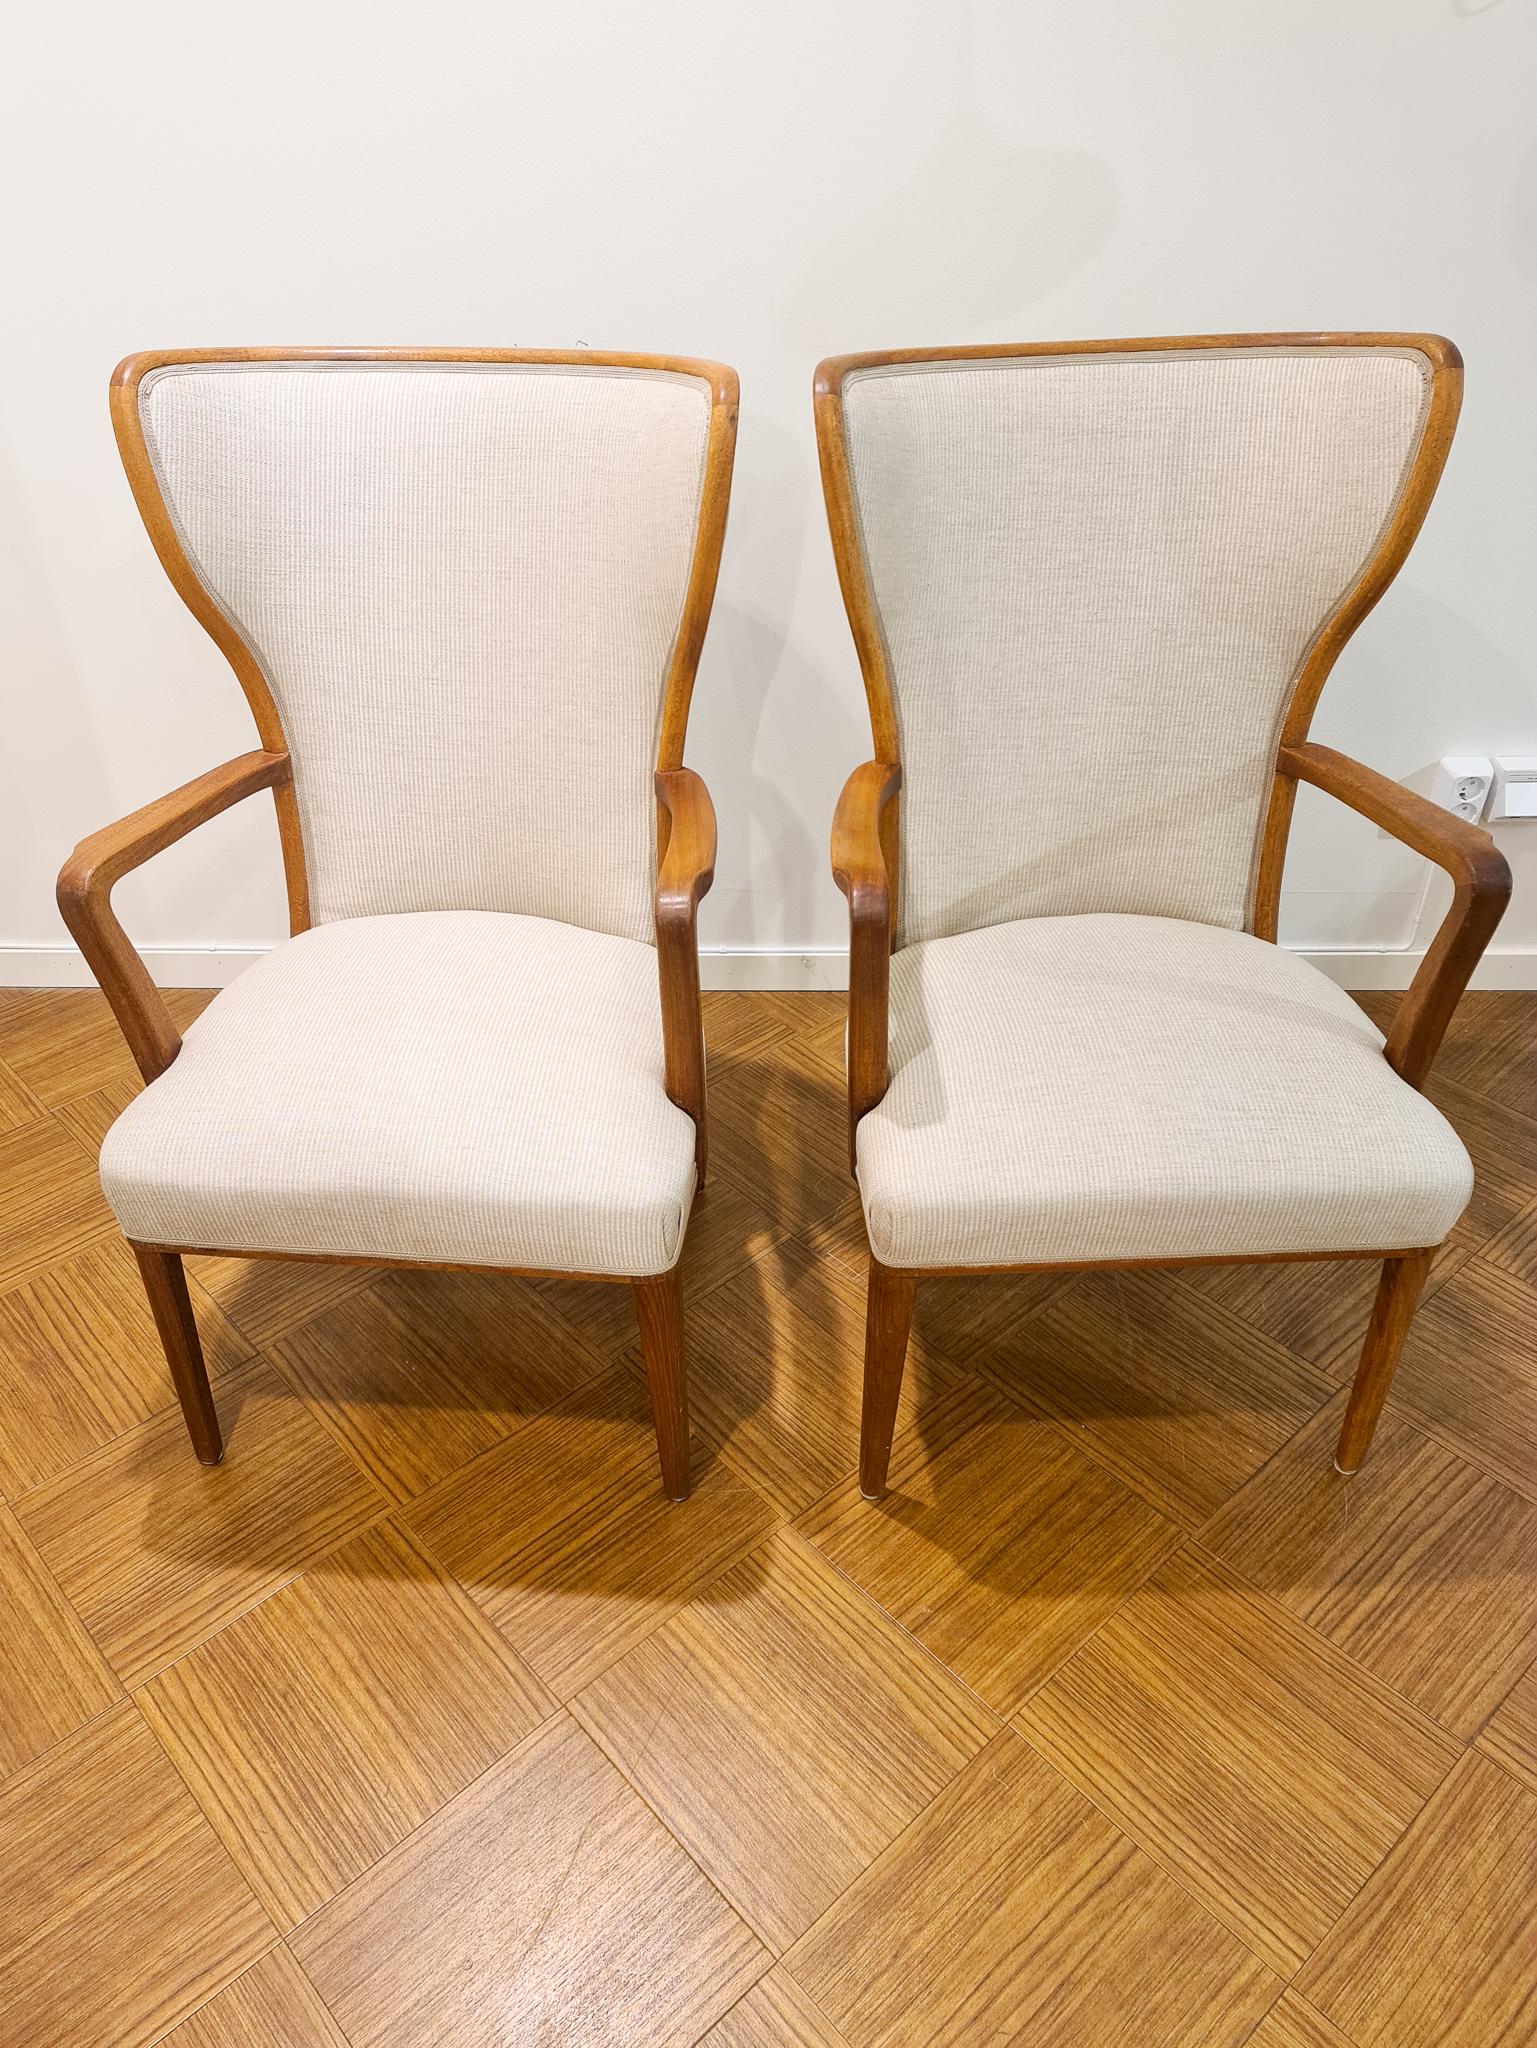 Art Deco Lounge Chairs Svenska Kontorsmöbler, Sweden, 1940s For Sale 1